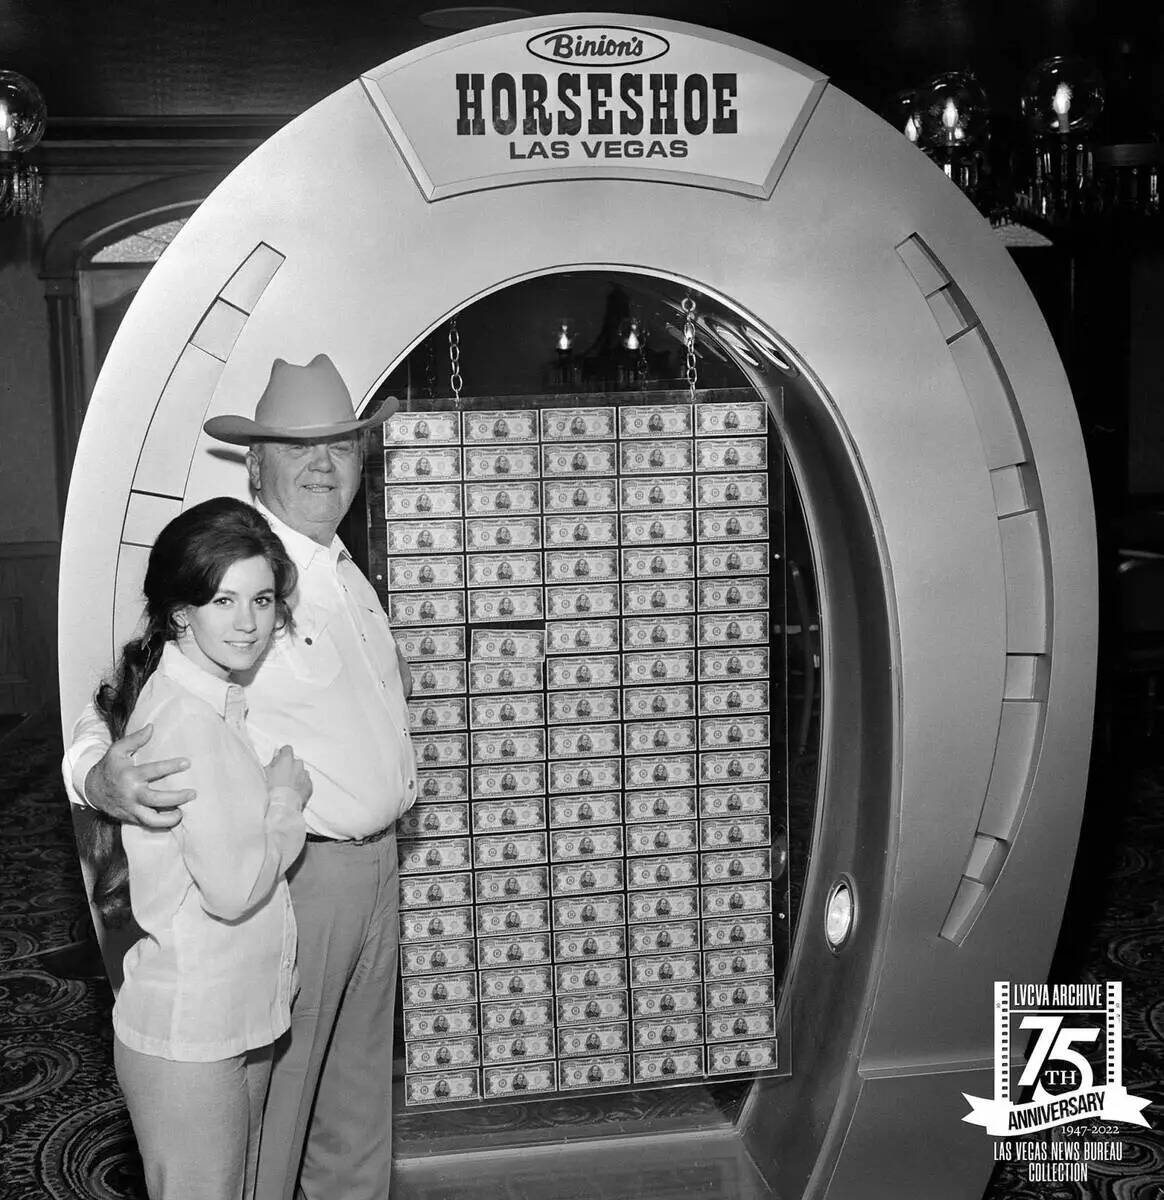 El casino Binion's Horseshoe era conocido por su exhibición del millón de dólares. En la fot ...